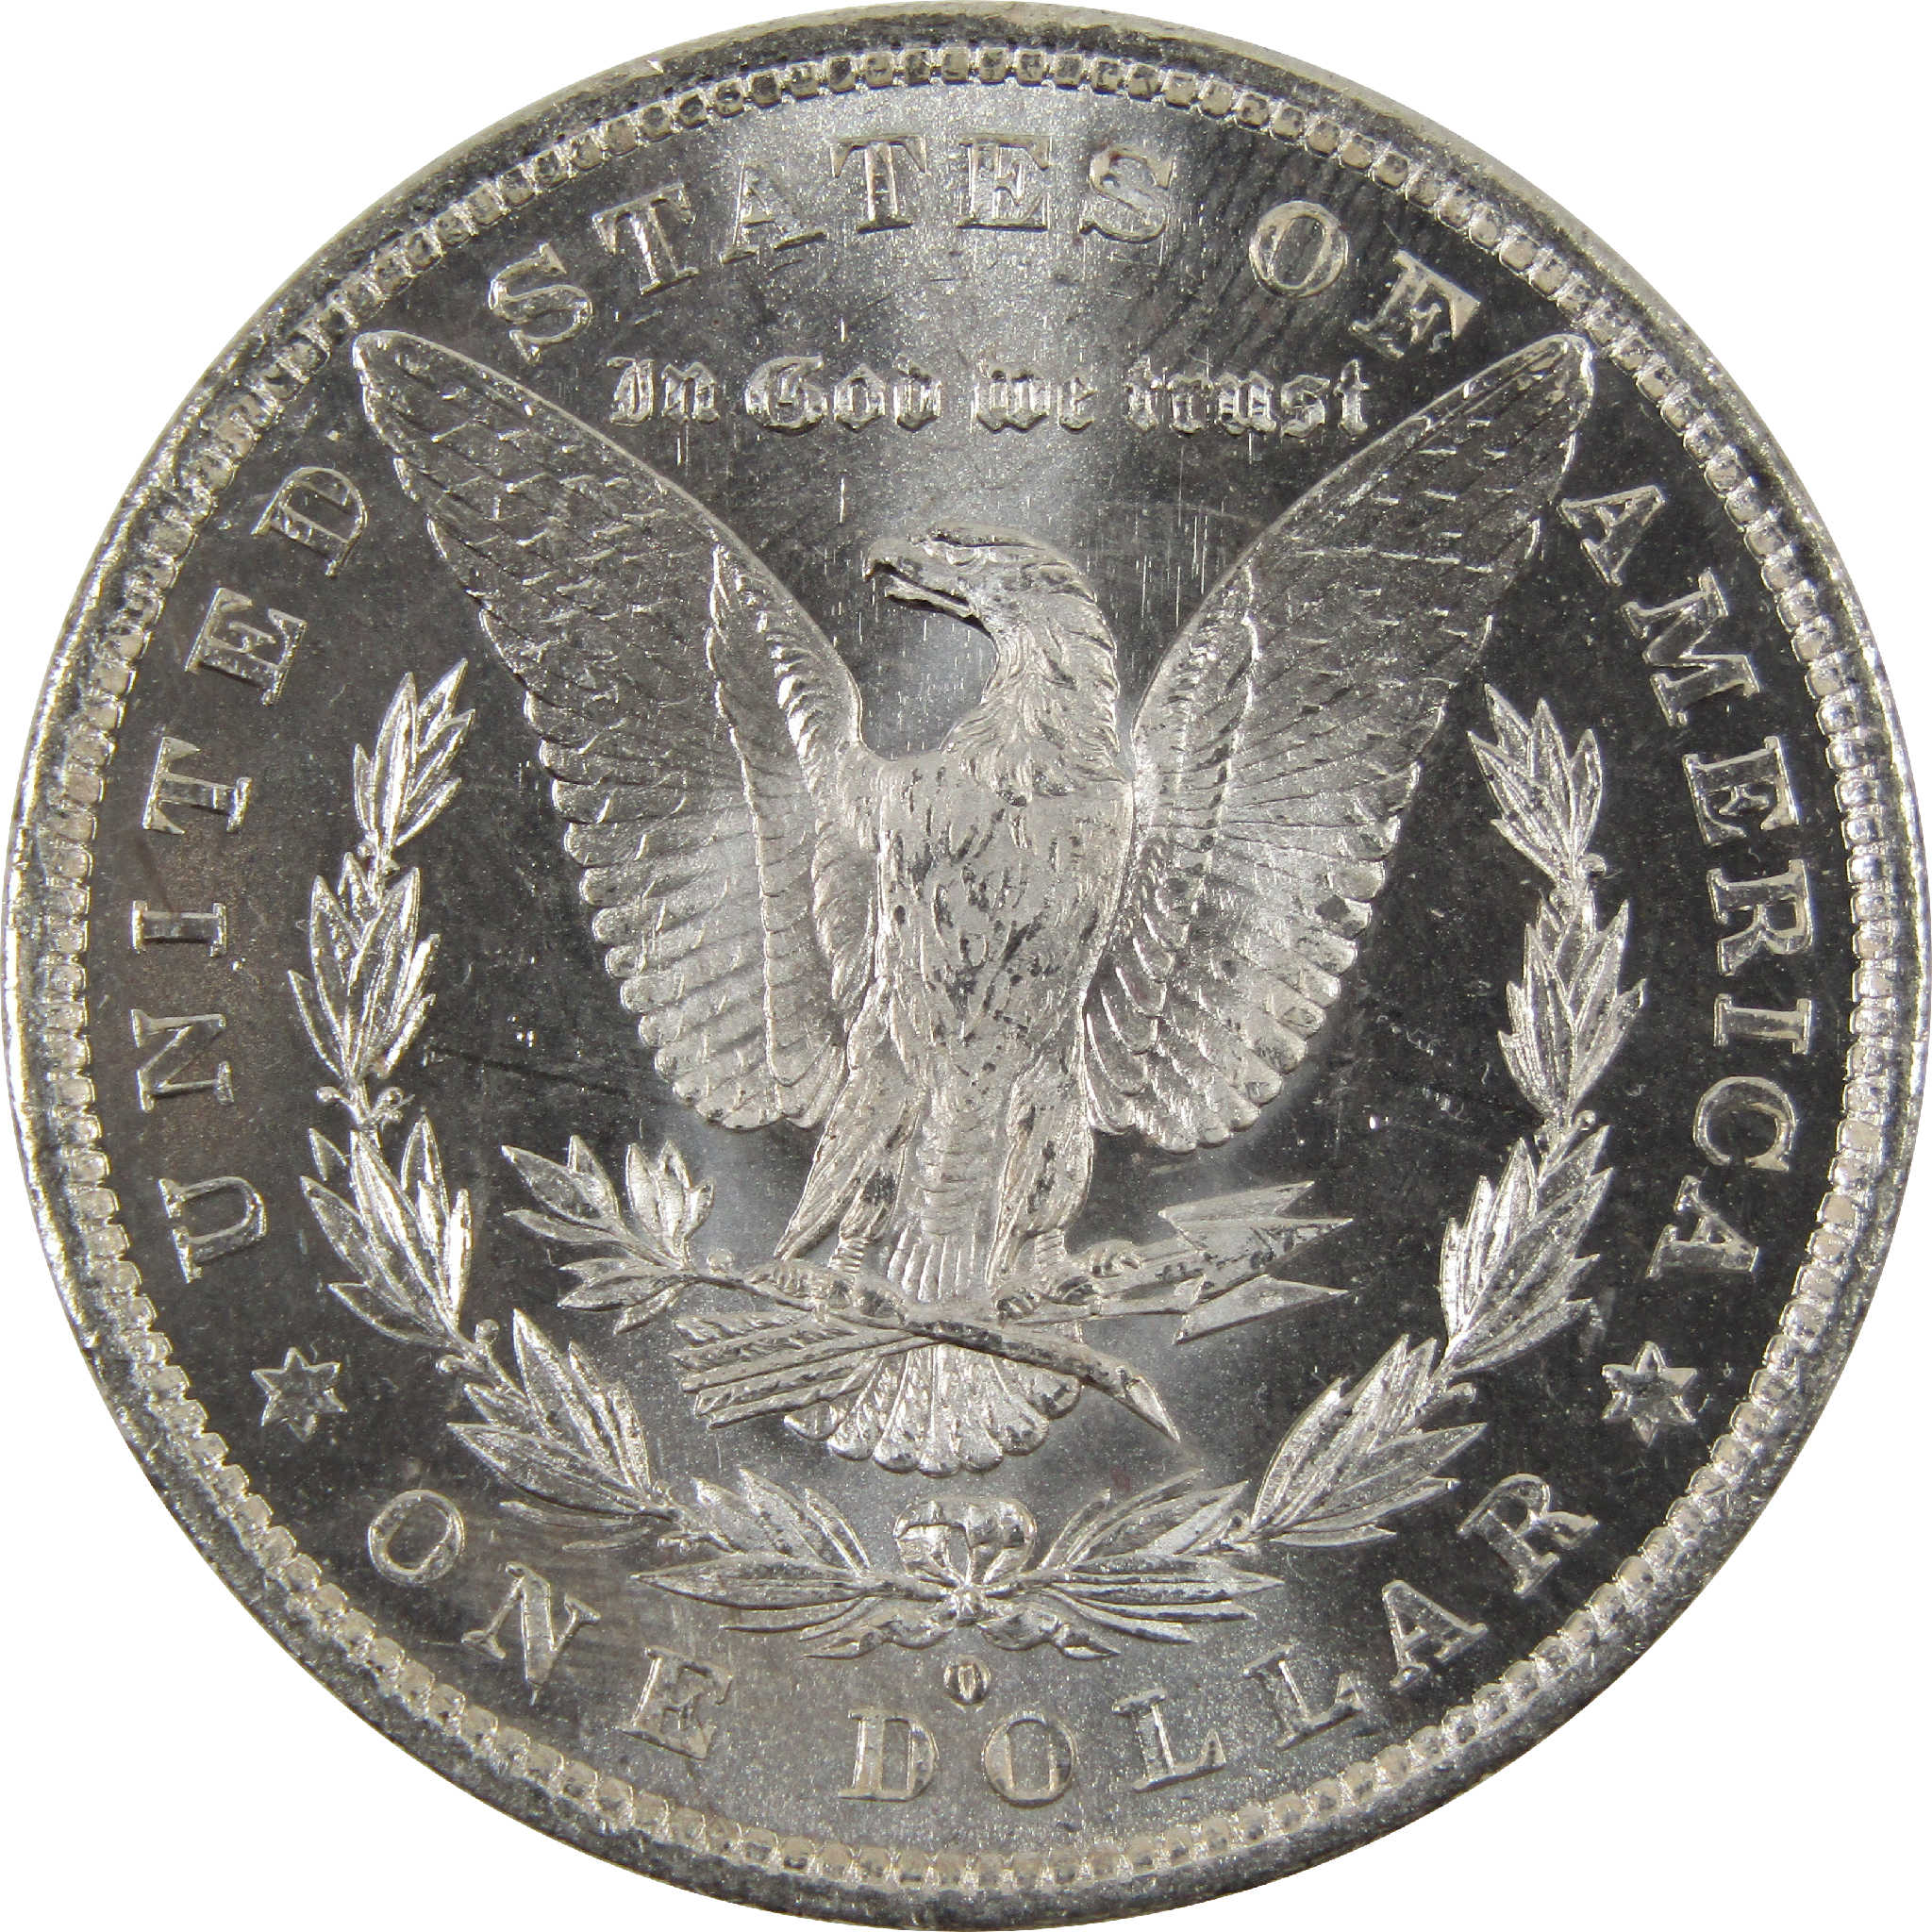 1882 O Morgan Dollar BU Uncirculated 90% Silver $1 Coin SKU:I8902 - Morgan coin - Morgan silver dollar - Morgan silver dollar for sale - Profile Coins &amp; Collectibles